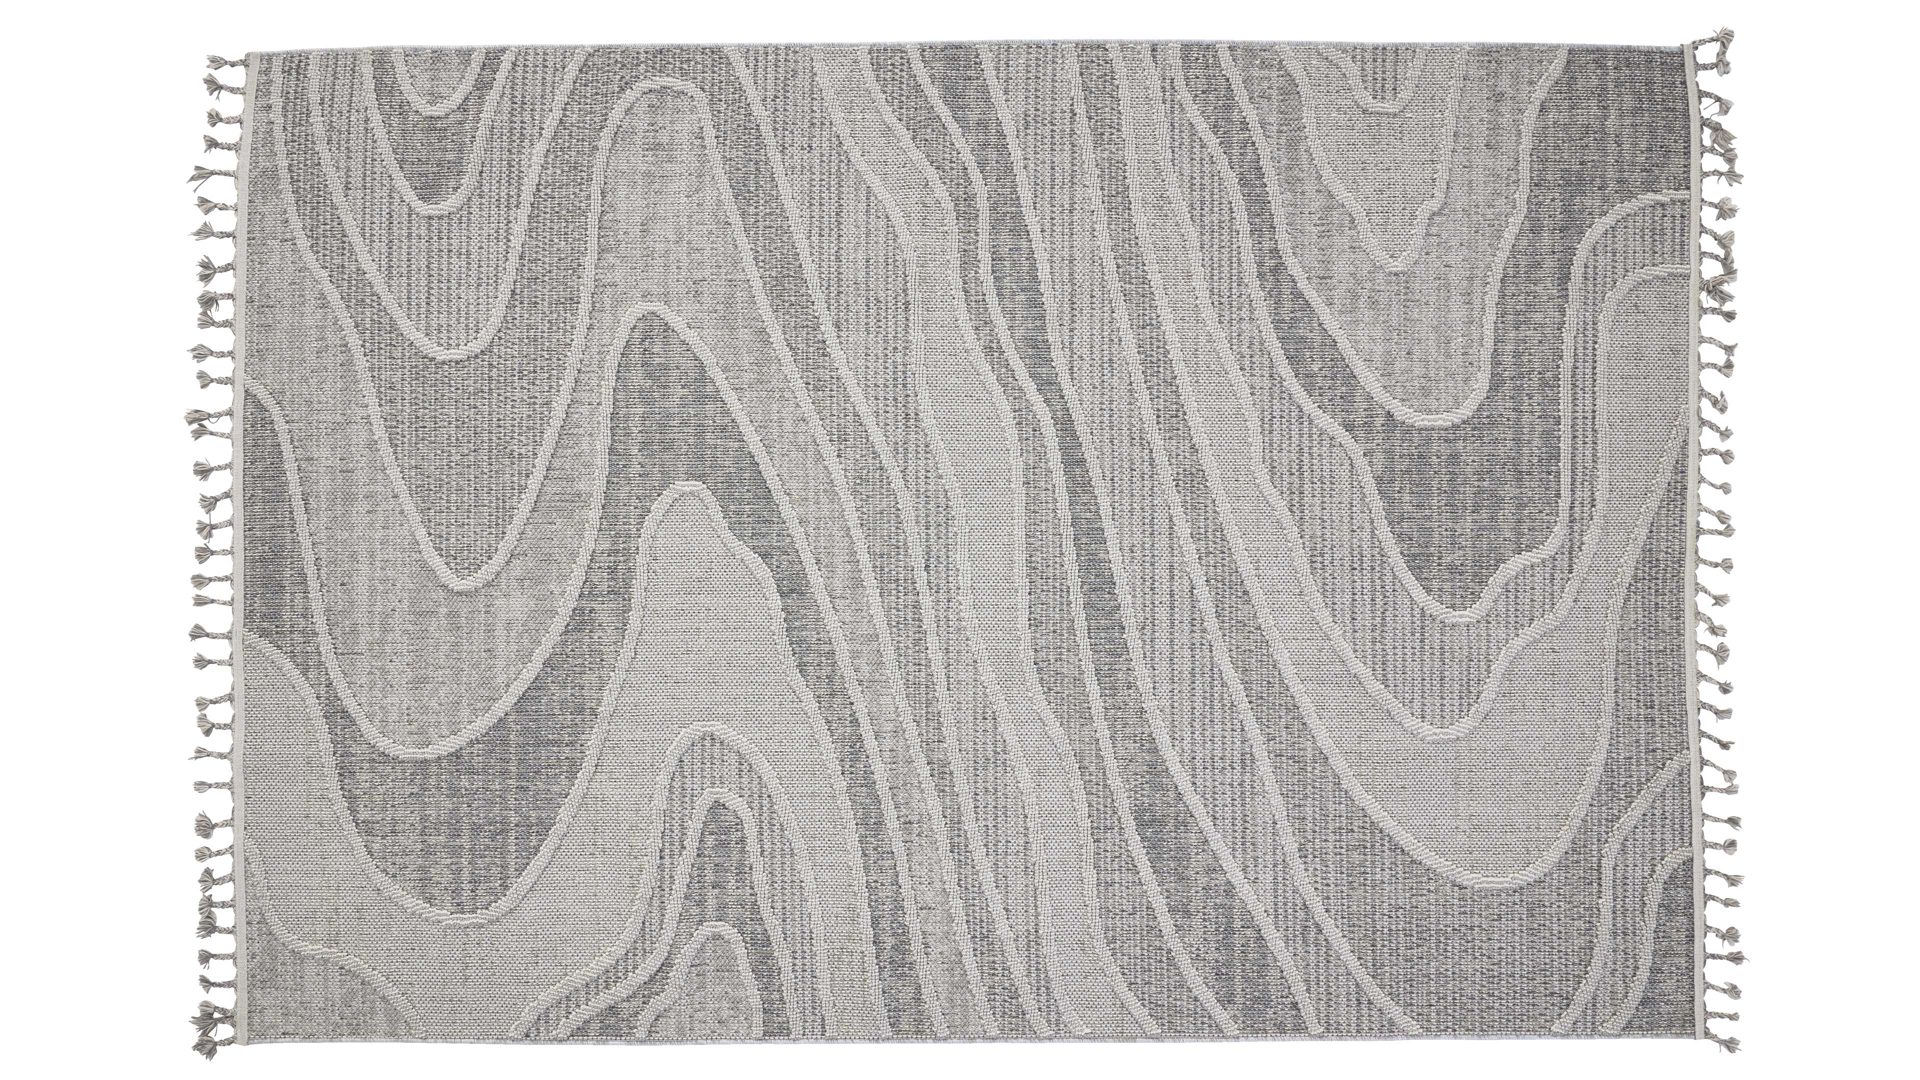 Outdoor-Teppich Interliving aus Kunstfaser in Grau Interliving Teppich Serie G-8020 - Outdoor-Teppich graues Linienmuster - ca. 80 x 150 cm